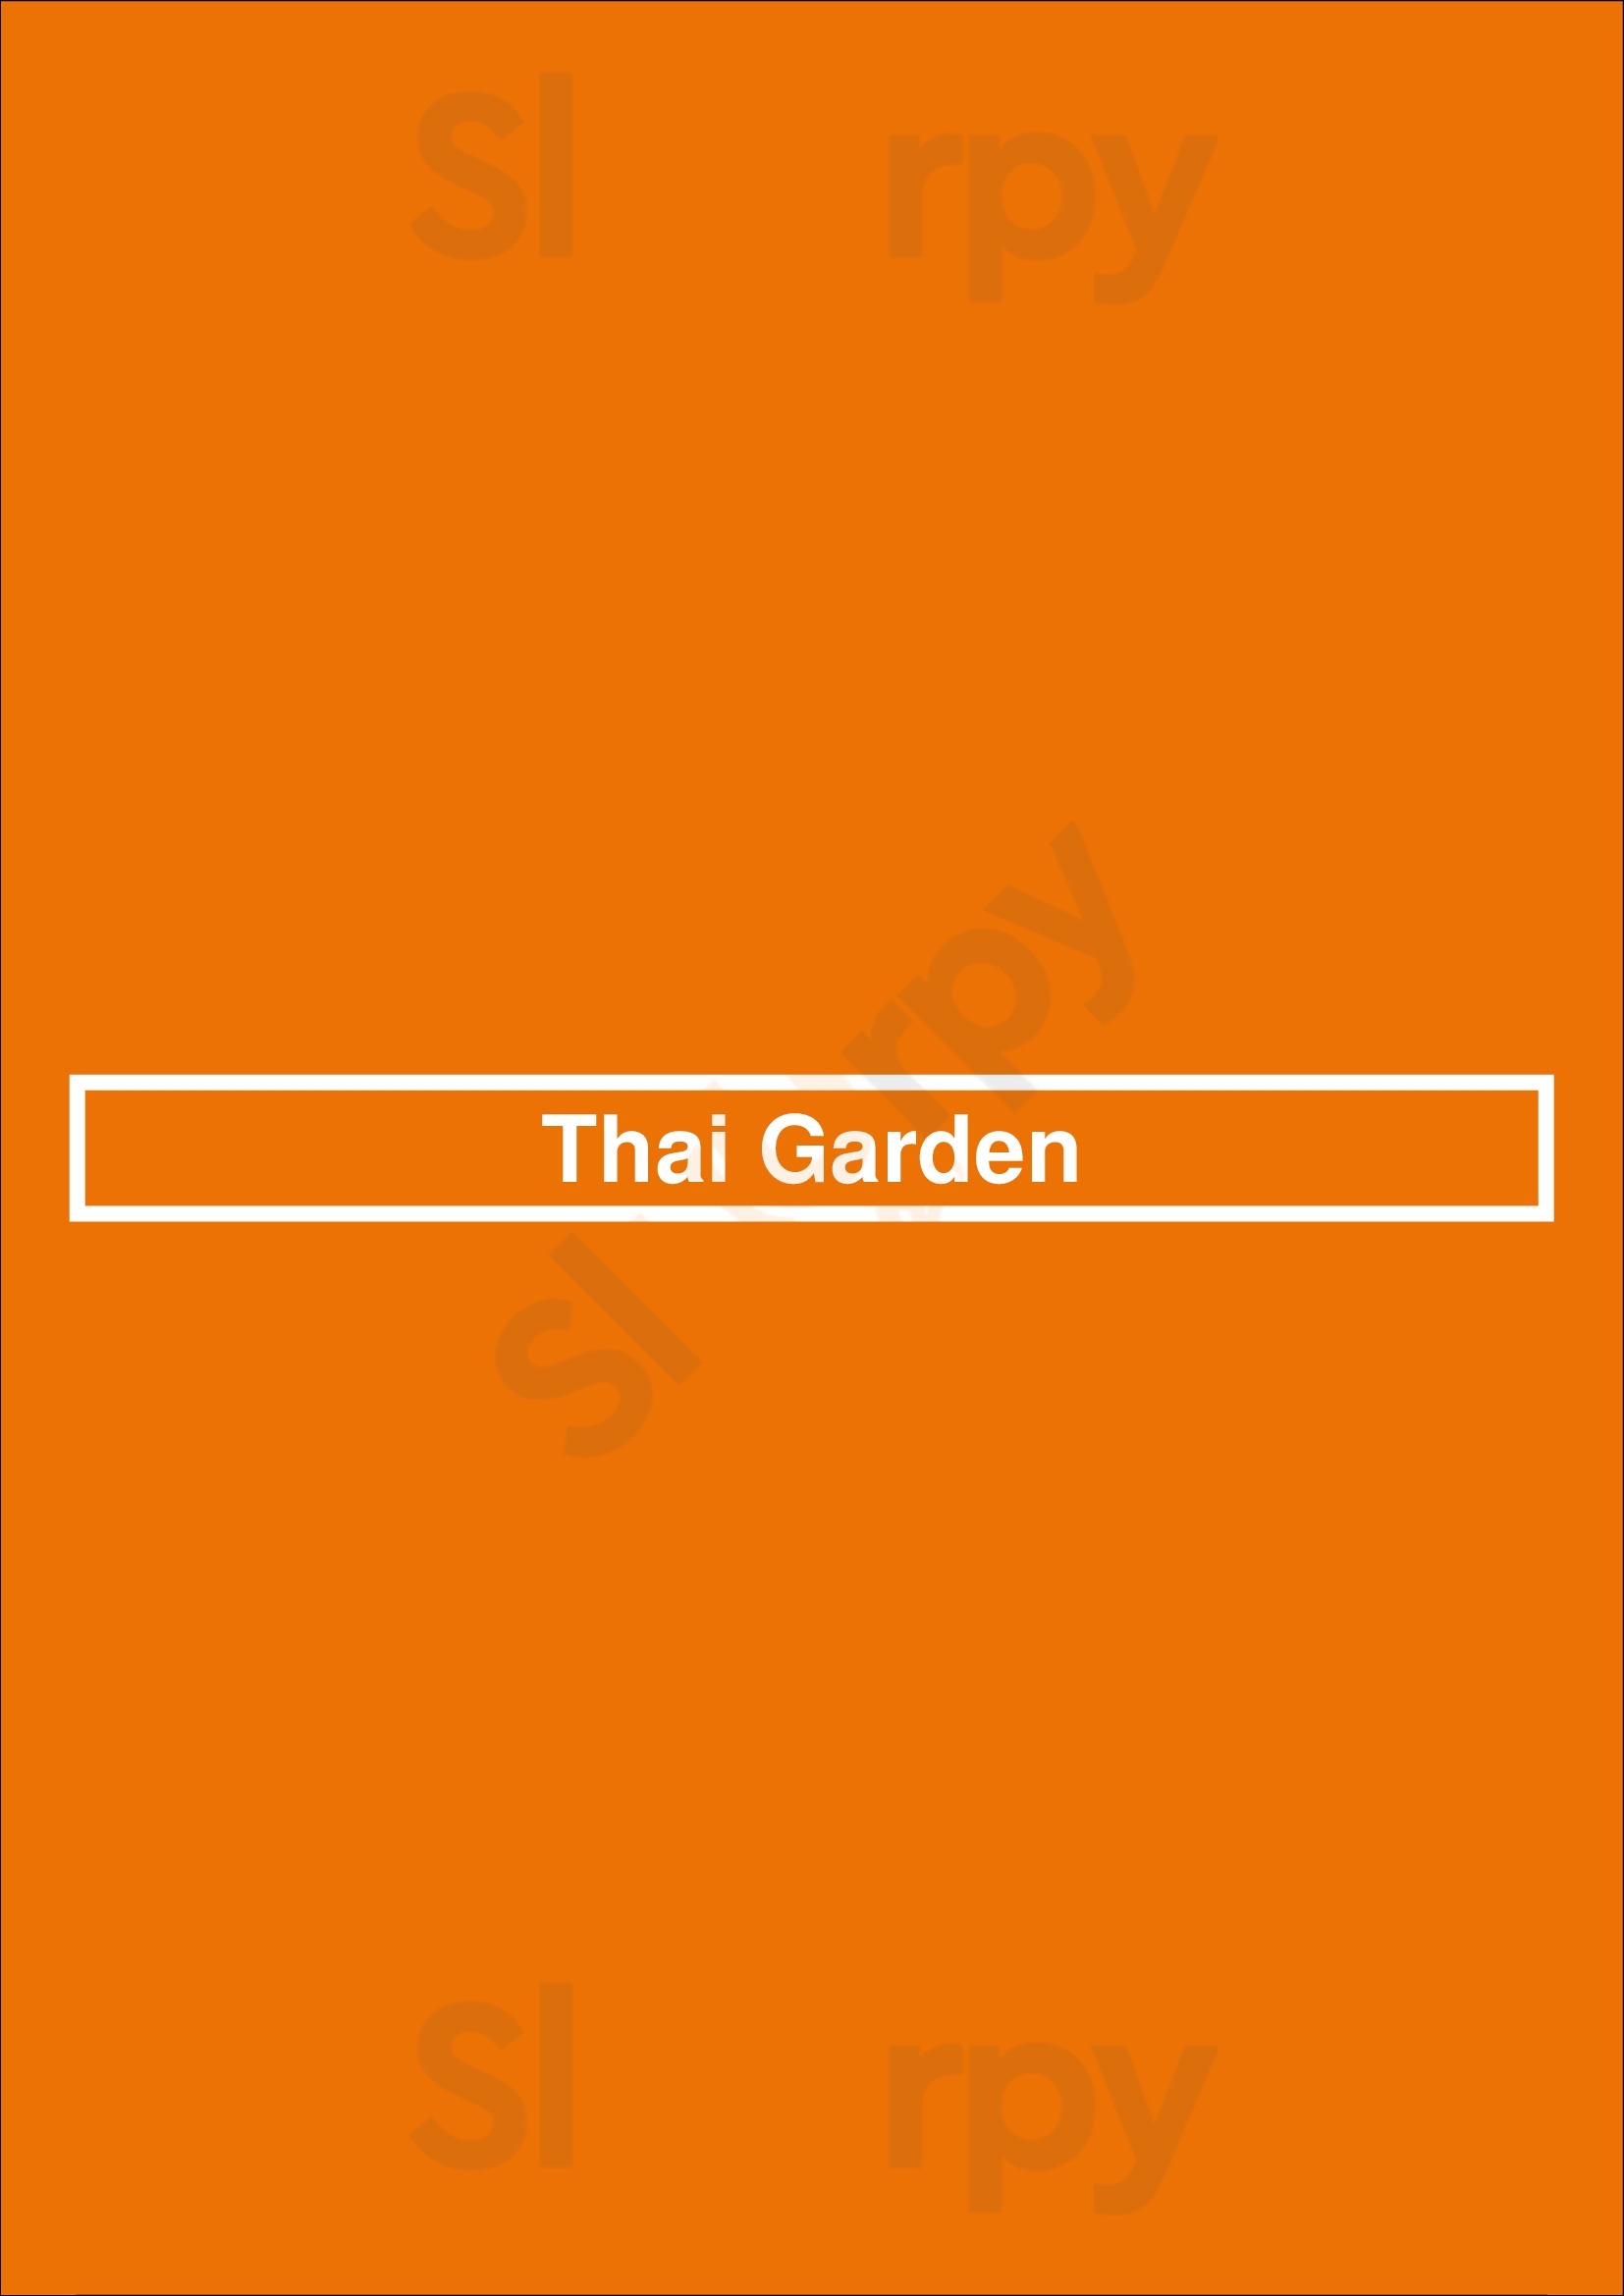 Thai Garden Schaumburg Menu - 1